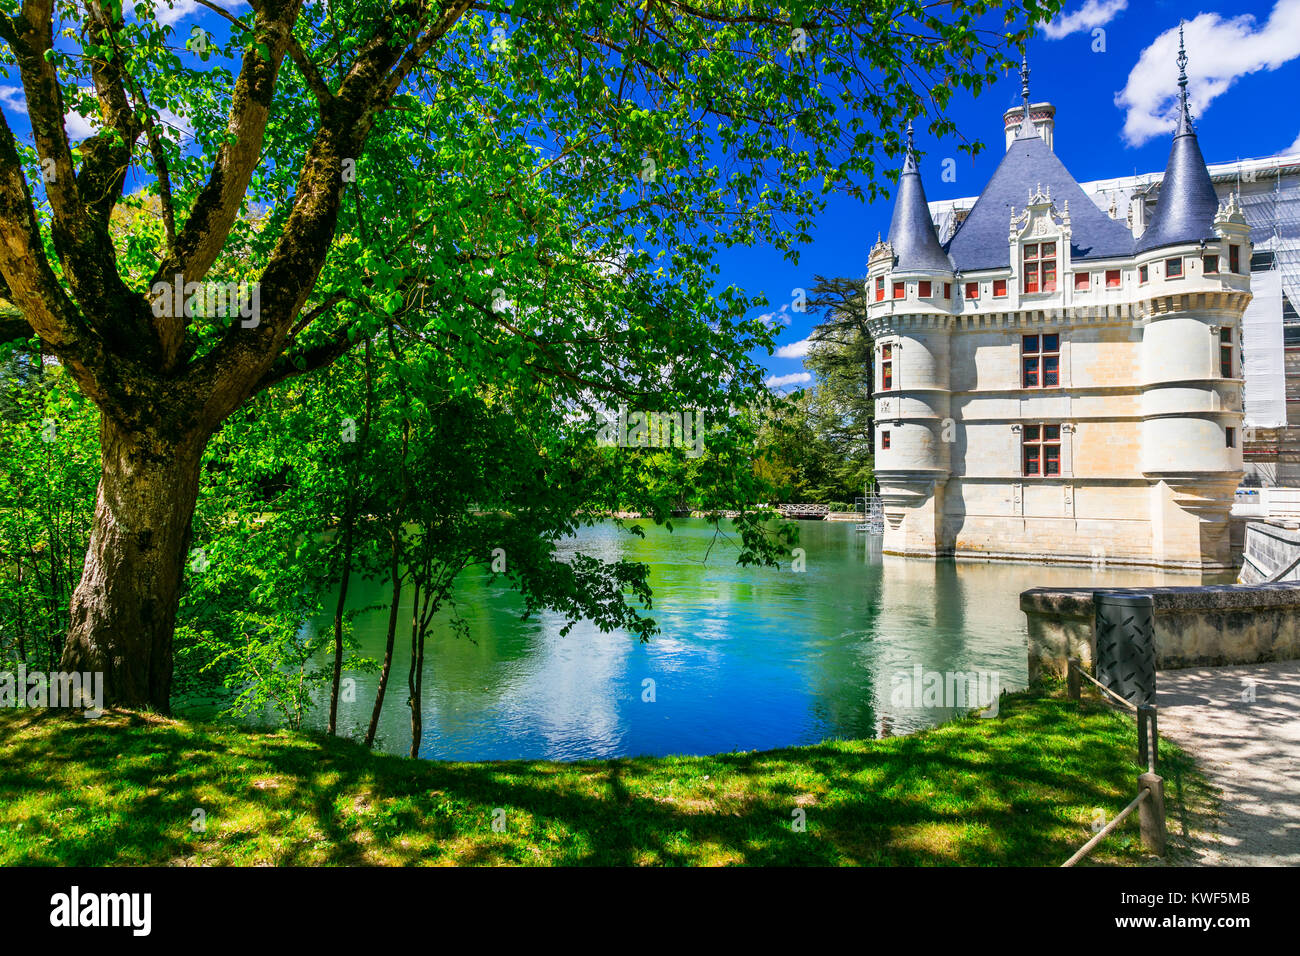 Impresionante Azay-le-Rideau castillo medieval, el valle del Loira, Francia. Foto de stock